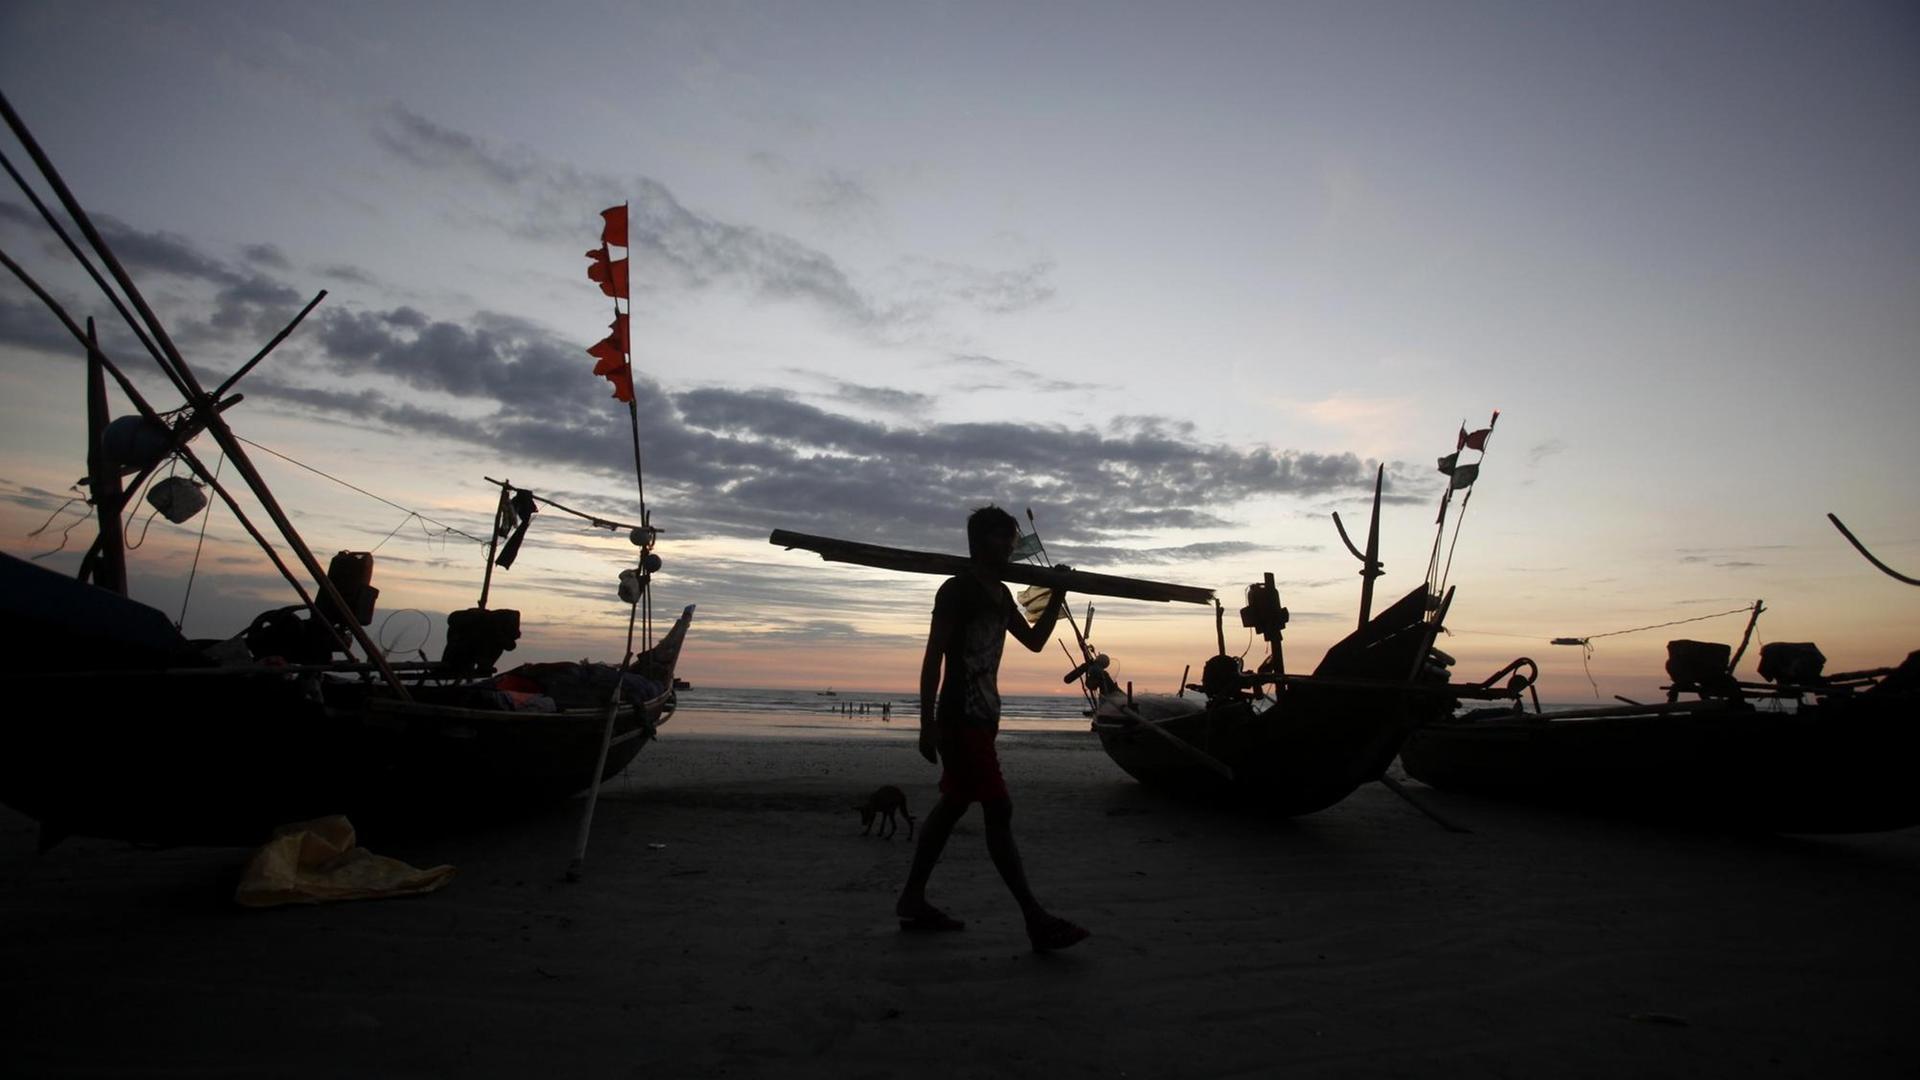 Das Bild zeigt einen Fischer am MaungMaKan Beach in Myanmar.